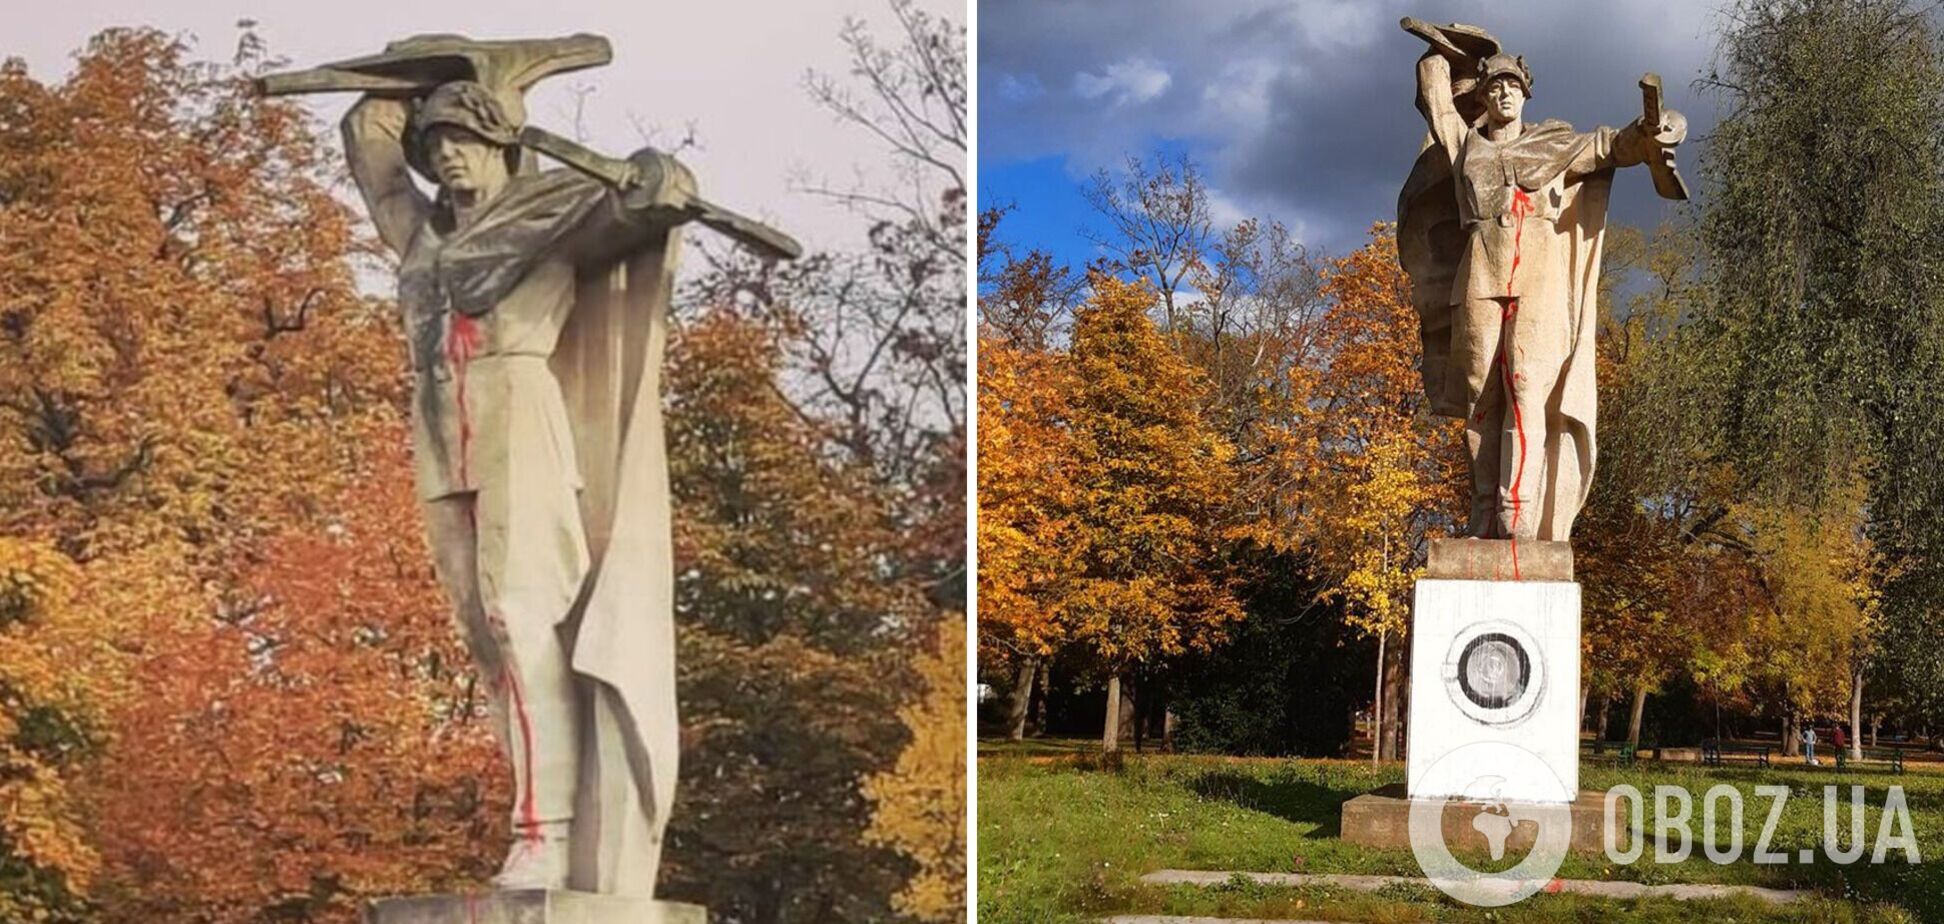 В Чехии монумент красноармейцу стилизовали под 'символ' российской оккупации – стиральную машинку. Фото